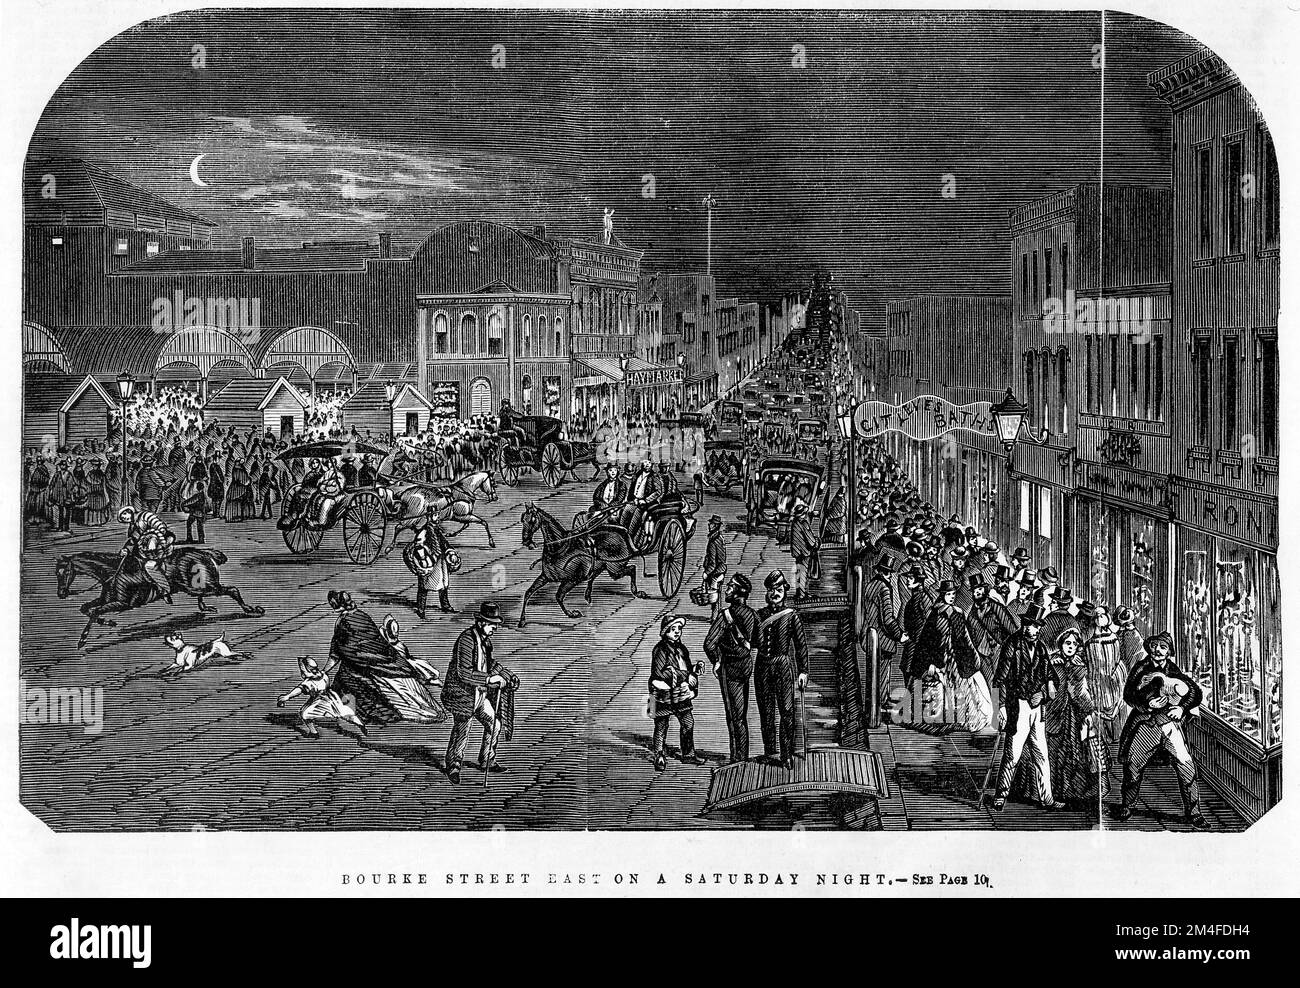 Bourke Street East à Melbourne un samedi soir en 1863. Montre une rue très bondée de Bourke, avec des voitures et des familles. Banque D'Images